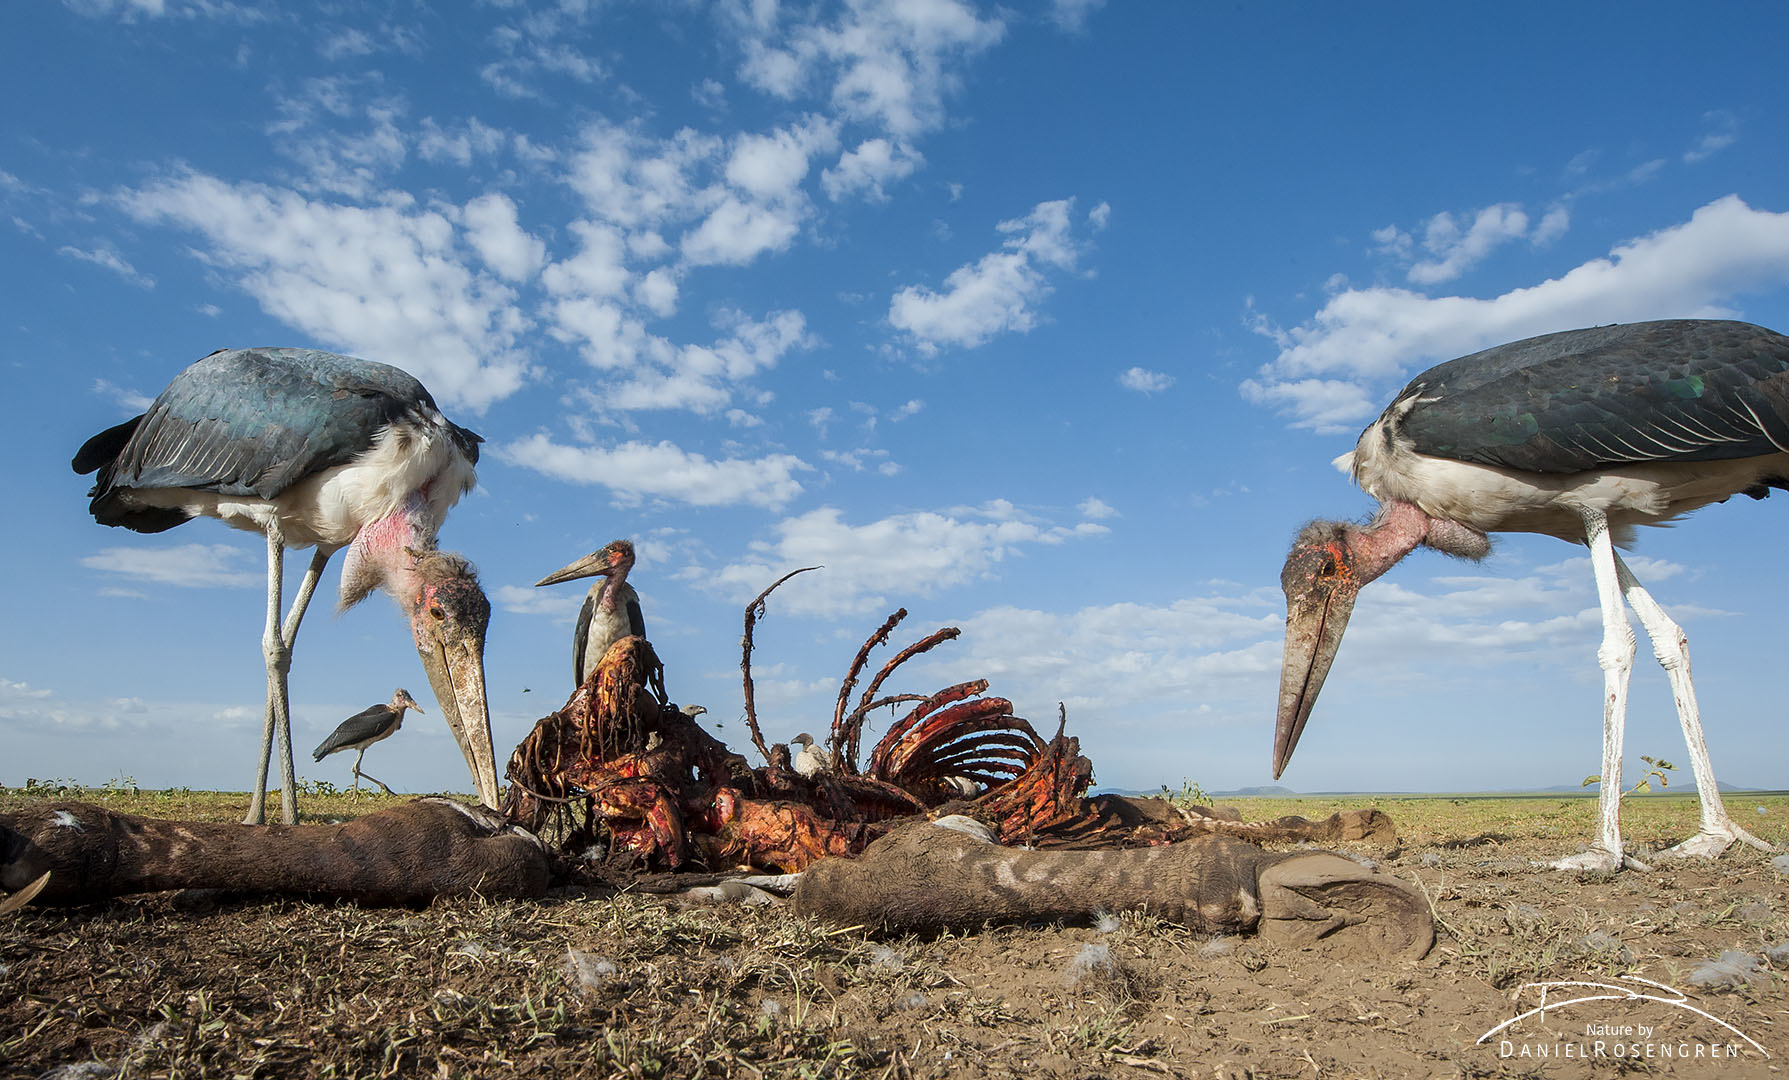 Marabou storks at a zebra carcass. © Daniel Rosengren